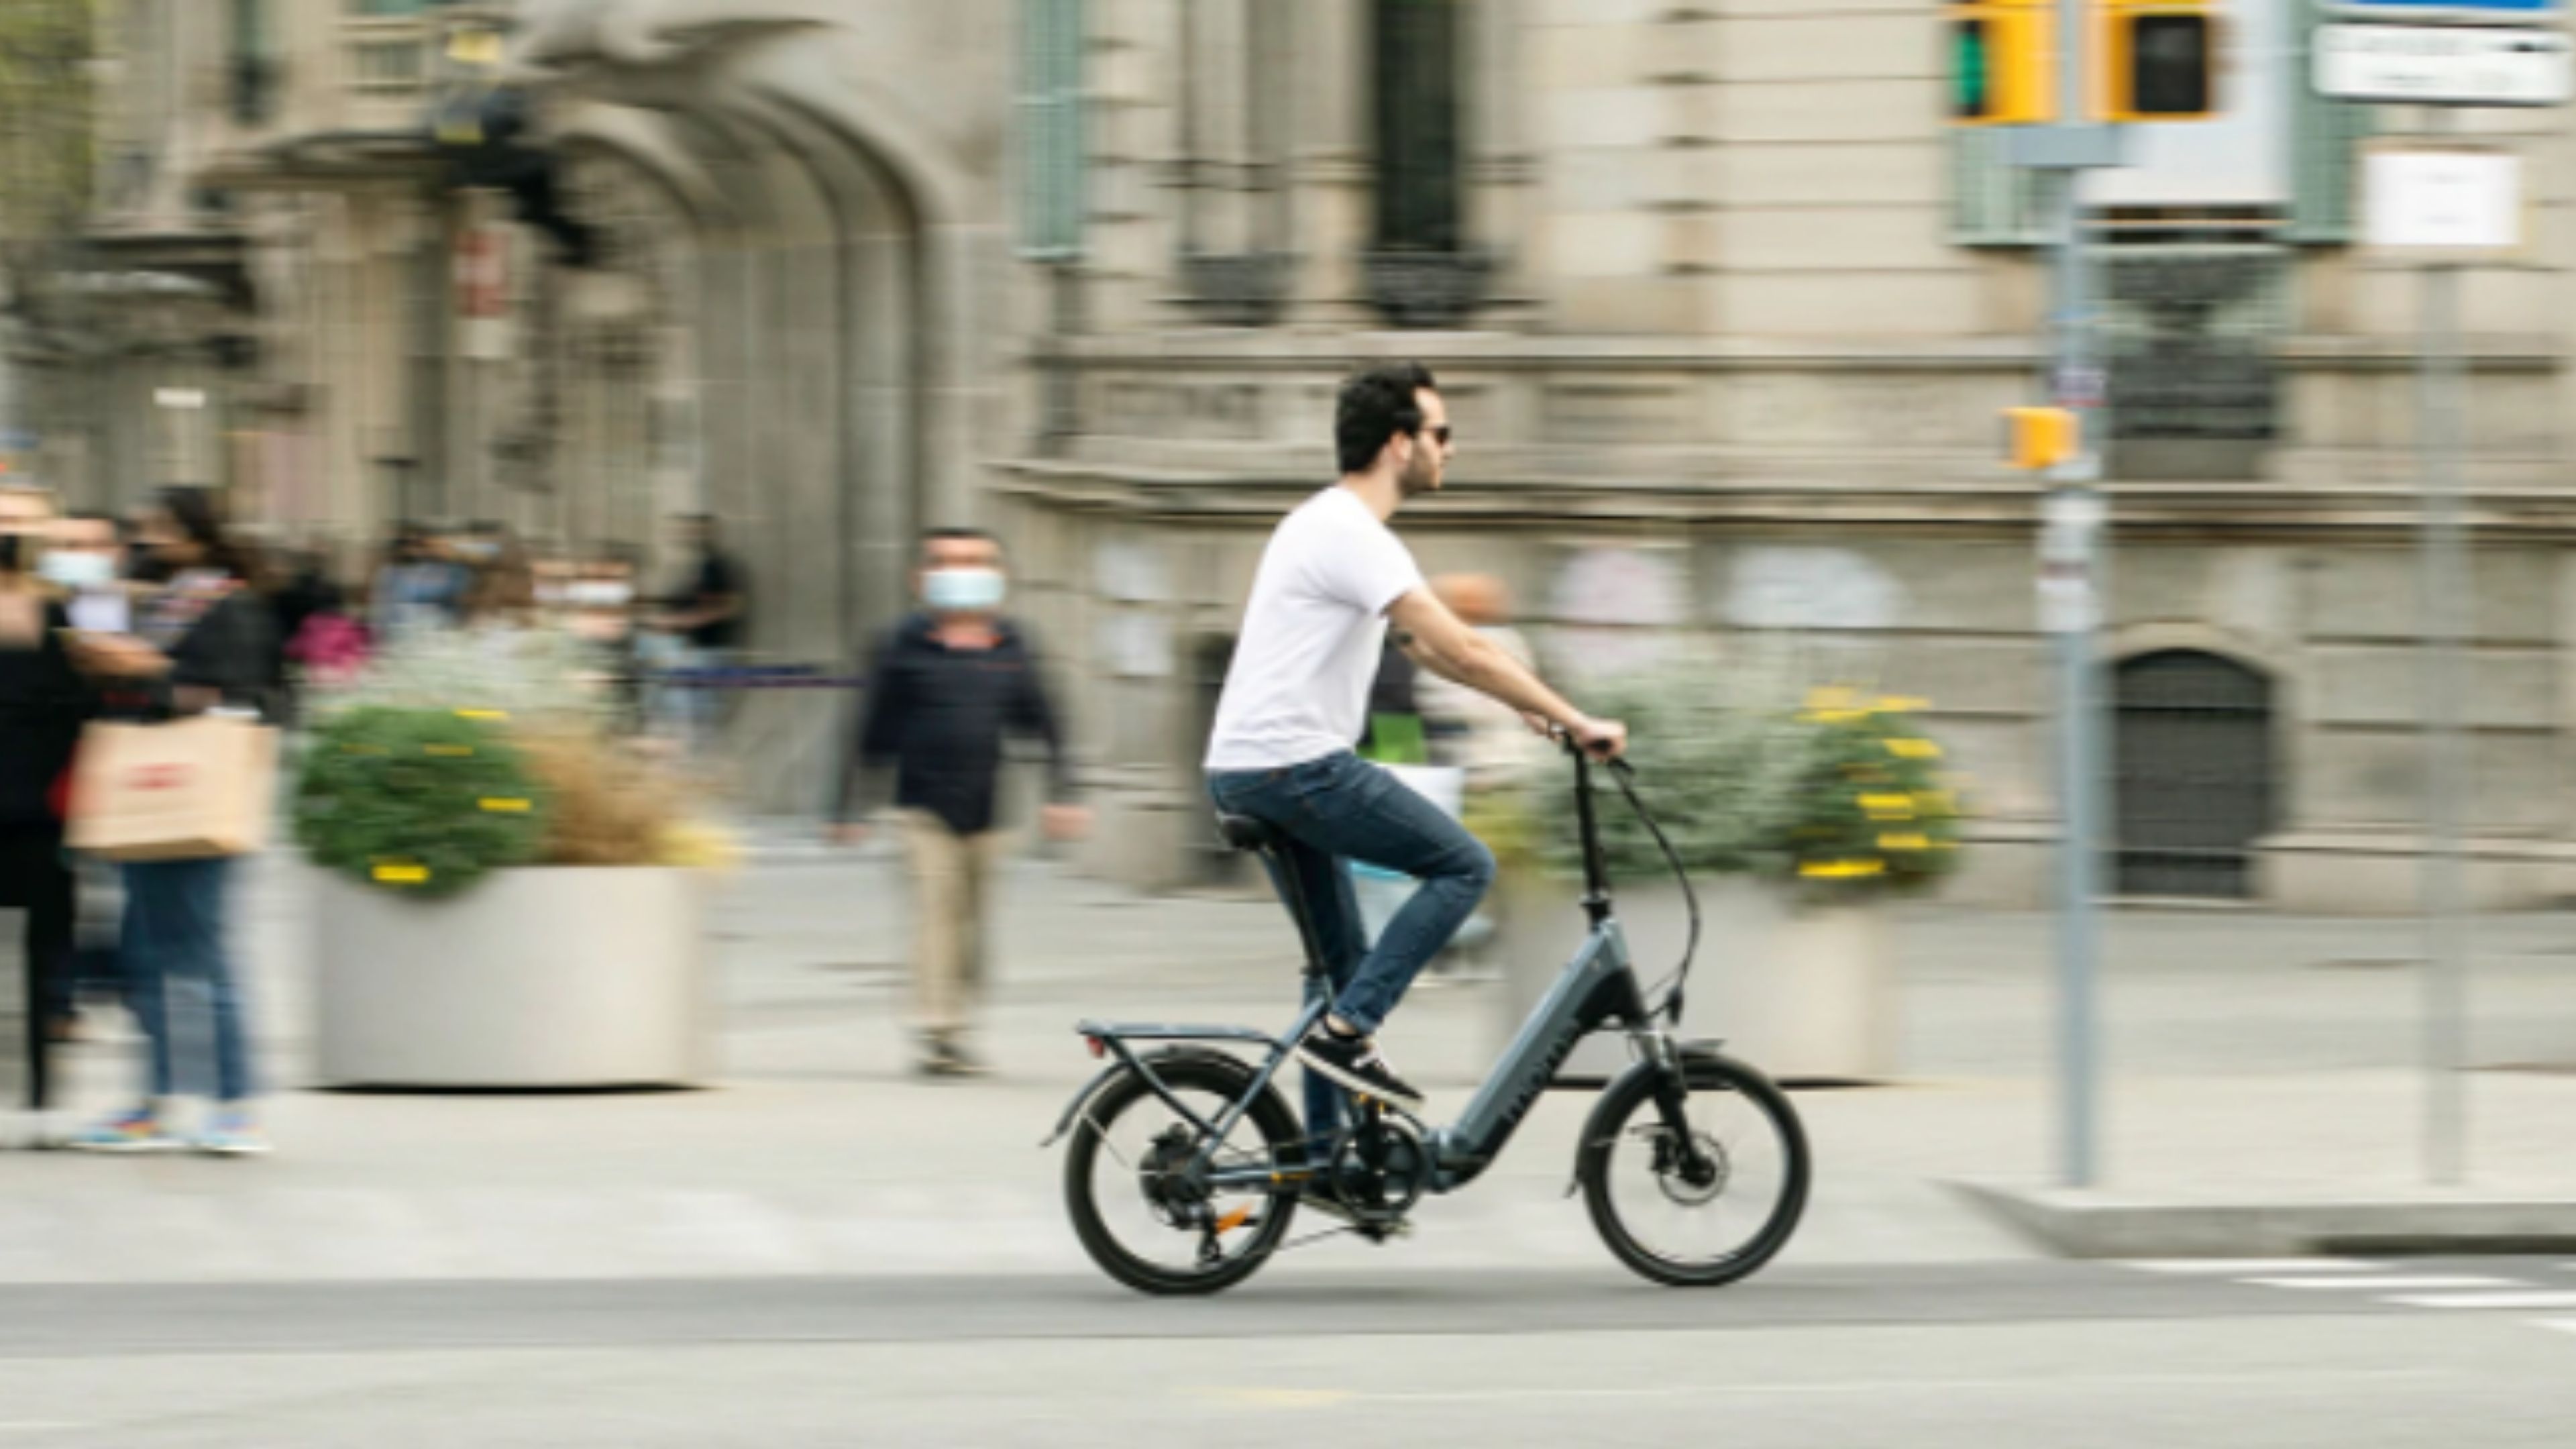 Descubre la ciudad en una bicicleta eléctrica con nuestra oferta